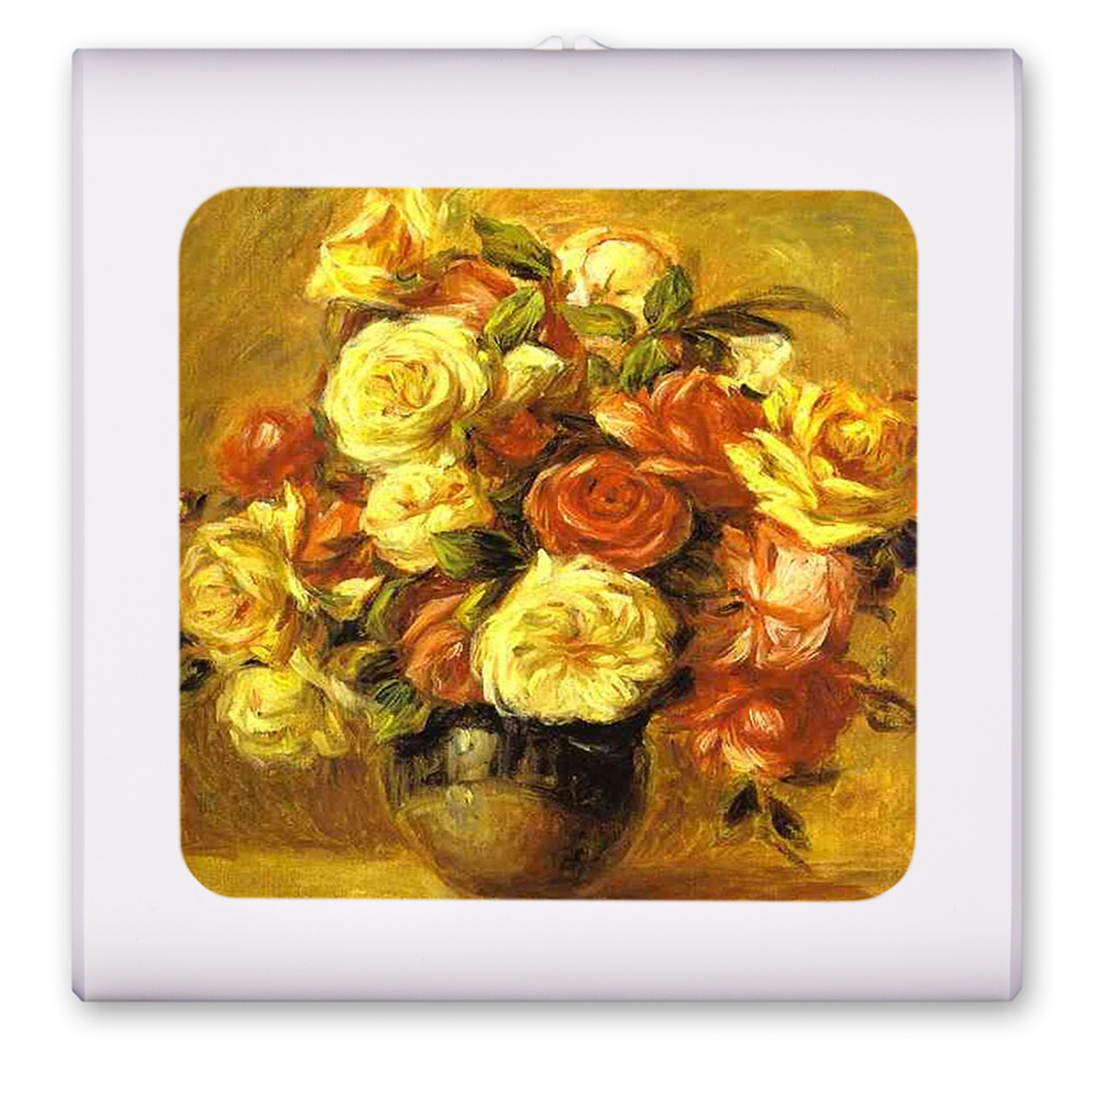 Renoir: Bouquet de roses - #597